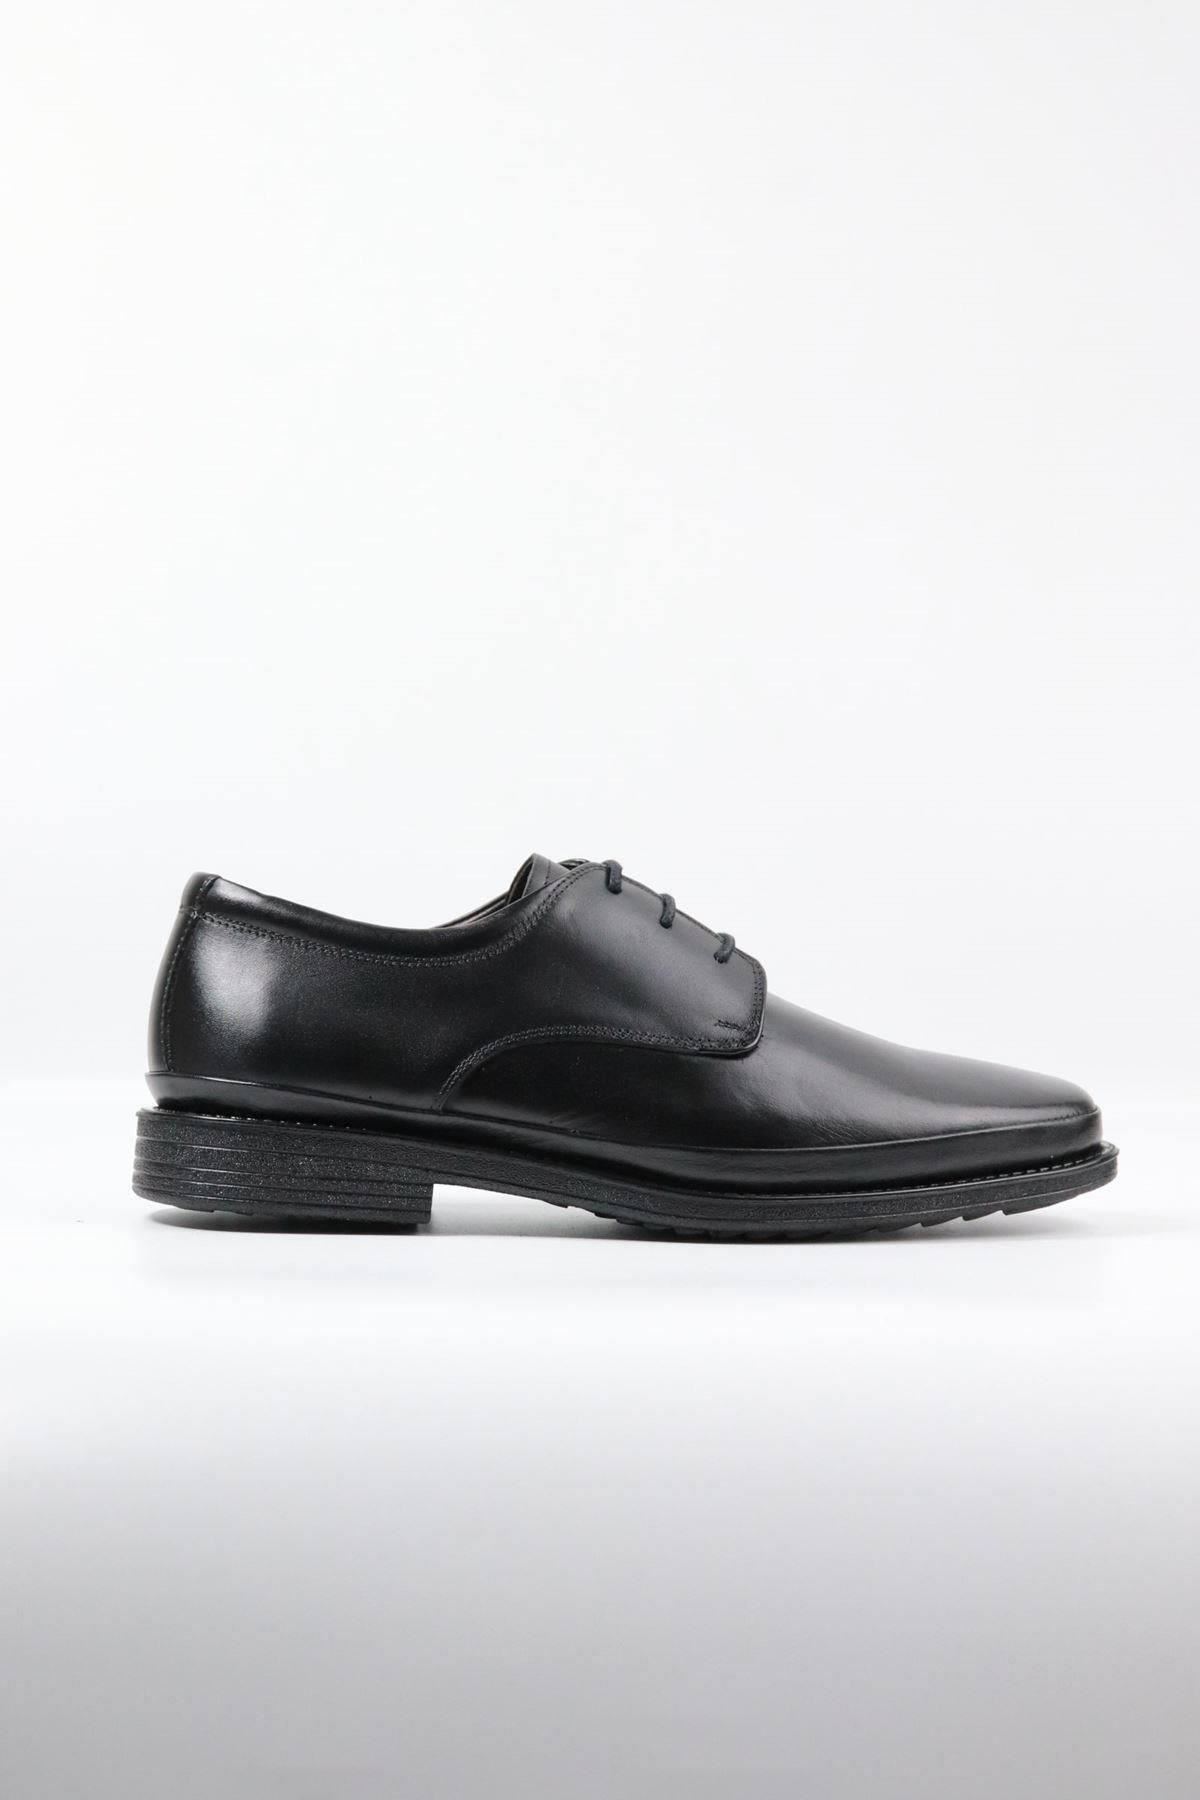 DANACI Danacı - 667 Siyah Hakiki Deri Erkek Klasik Ayakkabı